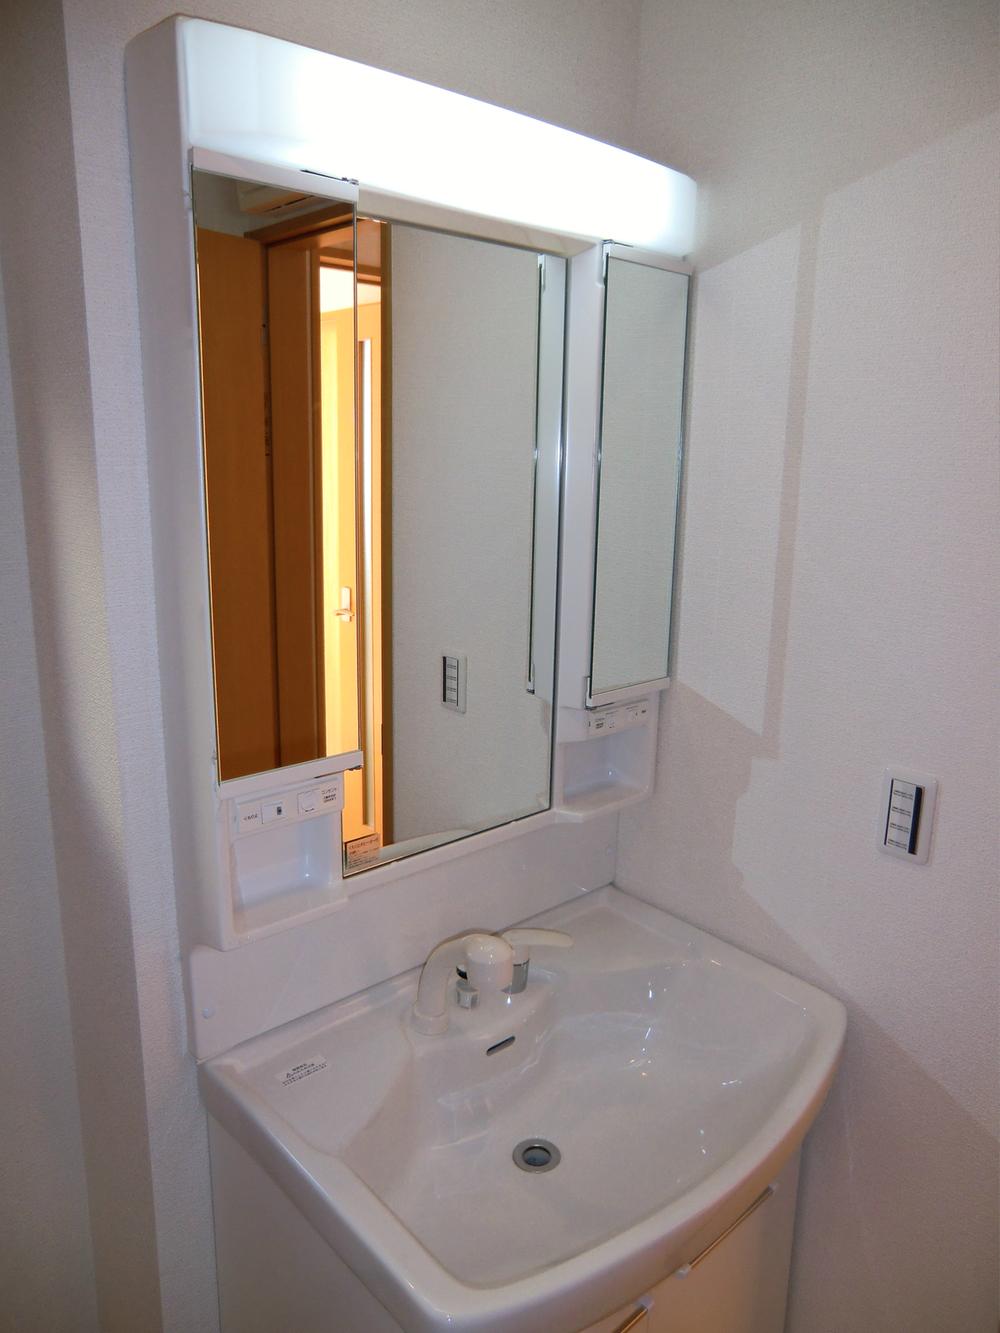 Wash basin, toilet. ◇ wash basin ◇  Three-sided mirror Shampoo dresser